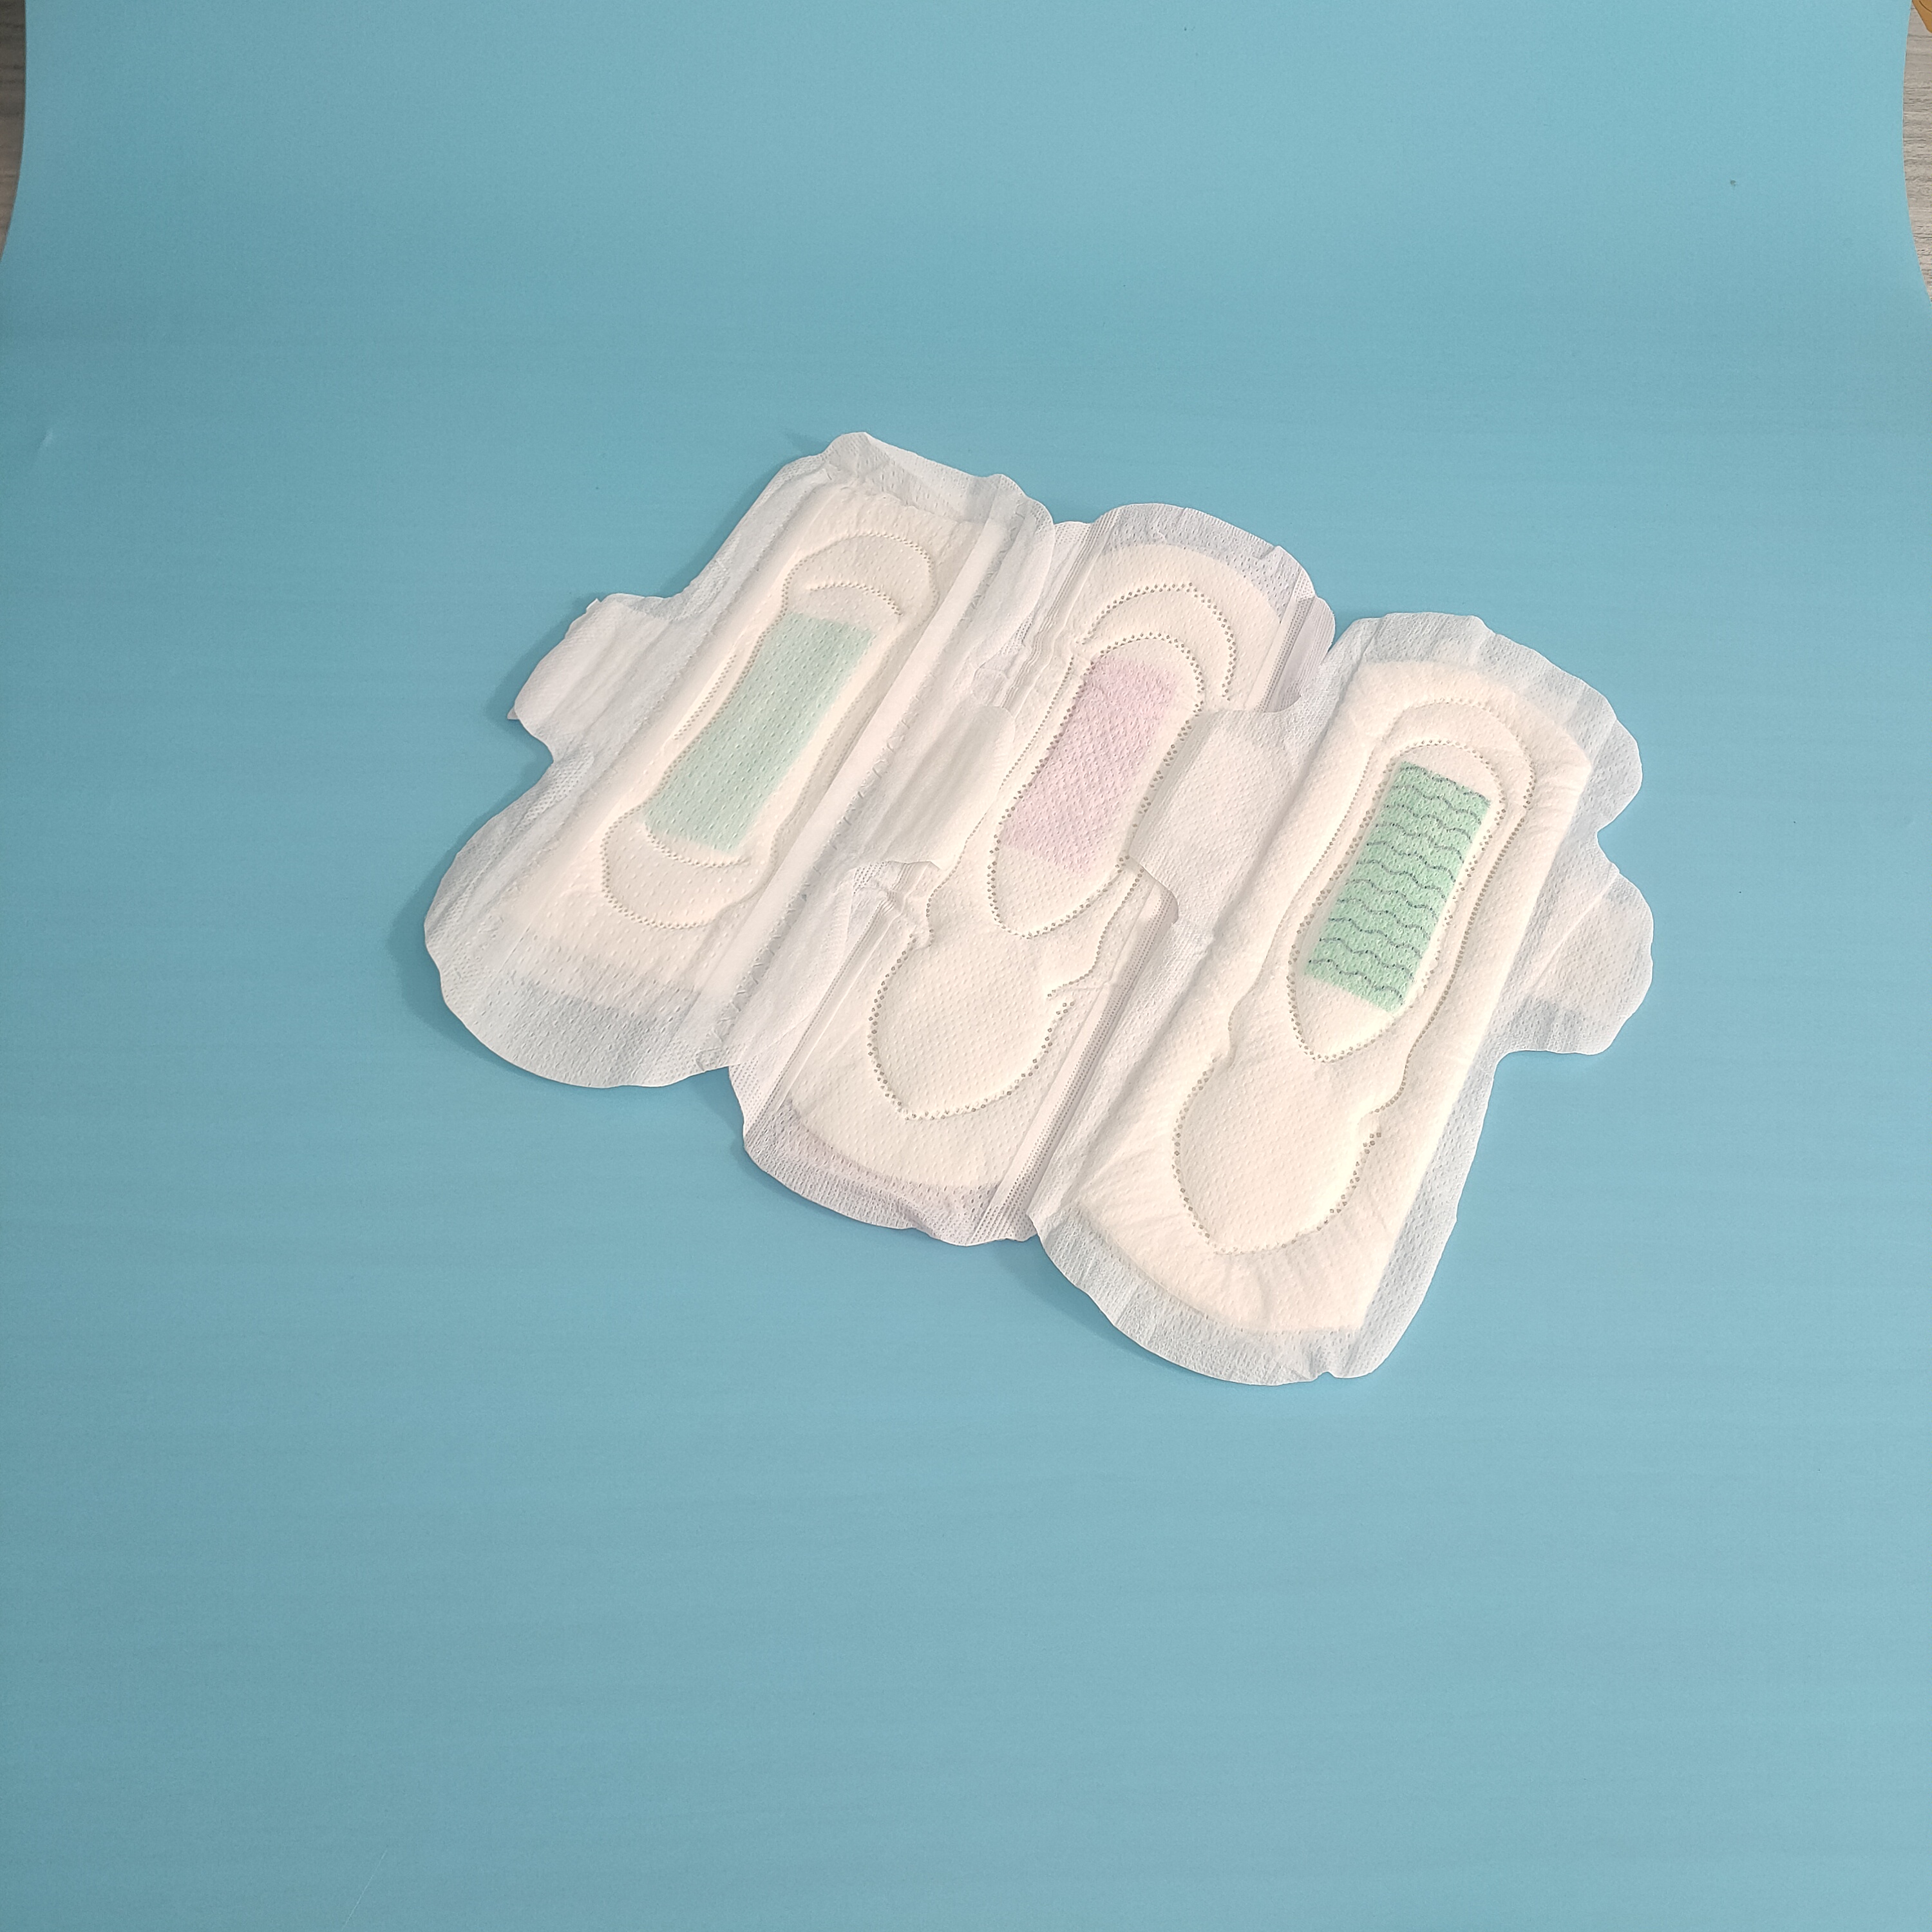 Гигиеническая прокладка одноразовая дневная прокладка для женщин с анионовым чипом Поставщики из Китая Гигиенические салфетки